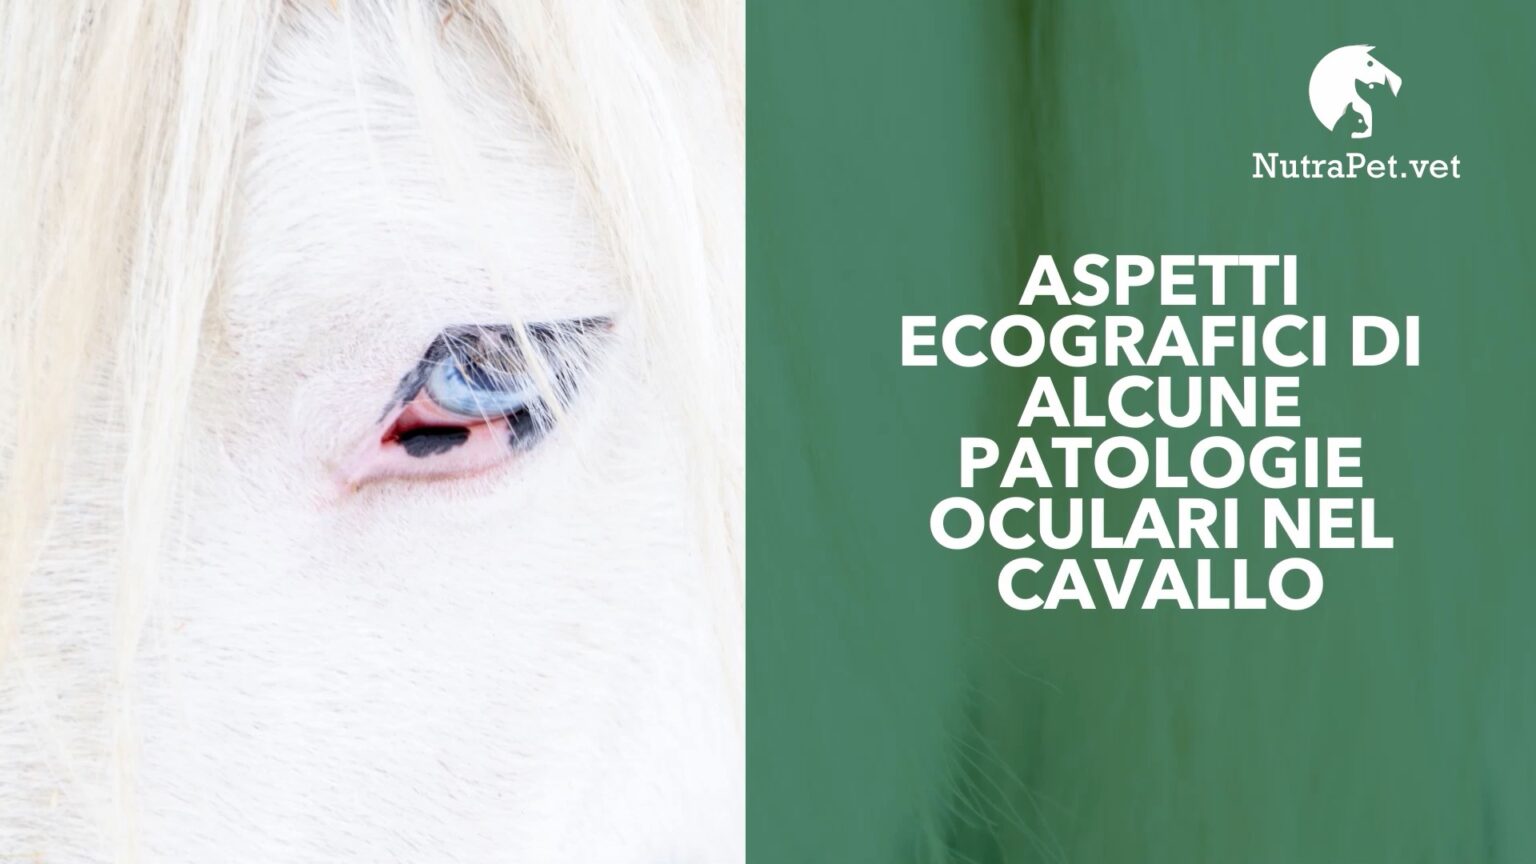 Rodolfo Gialletti – Aspetti ecografici di alcune patologie oculari nel cavallo